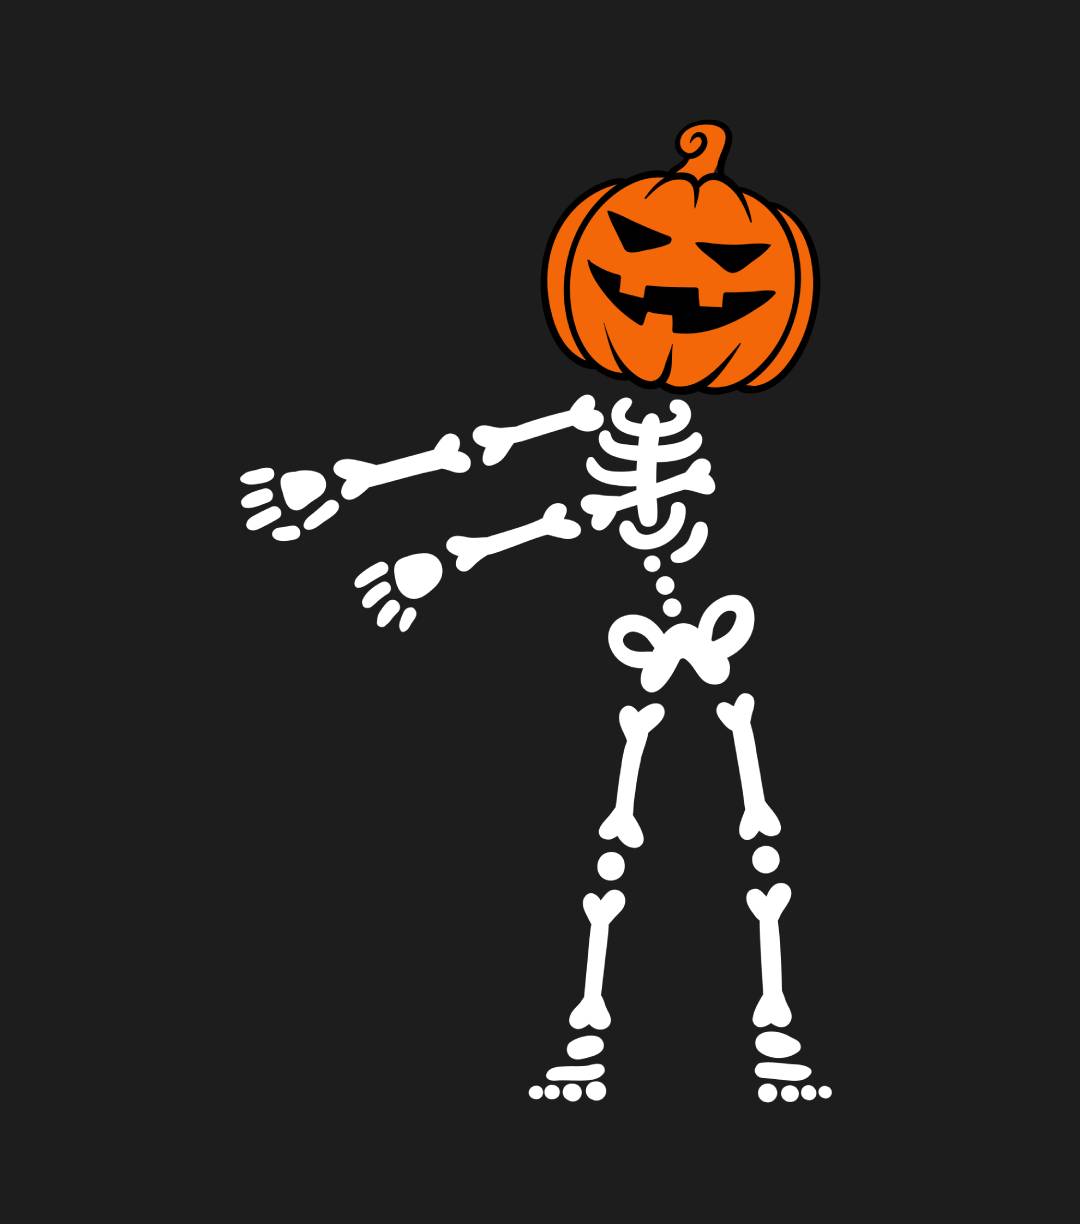 Tstars Dabbing Skeleton Shirt Floss Dance Pumpkin Face Halloween Kids Shirt